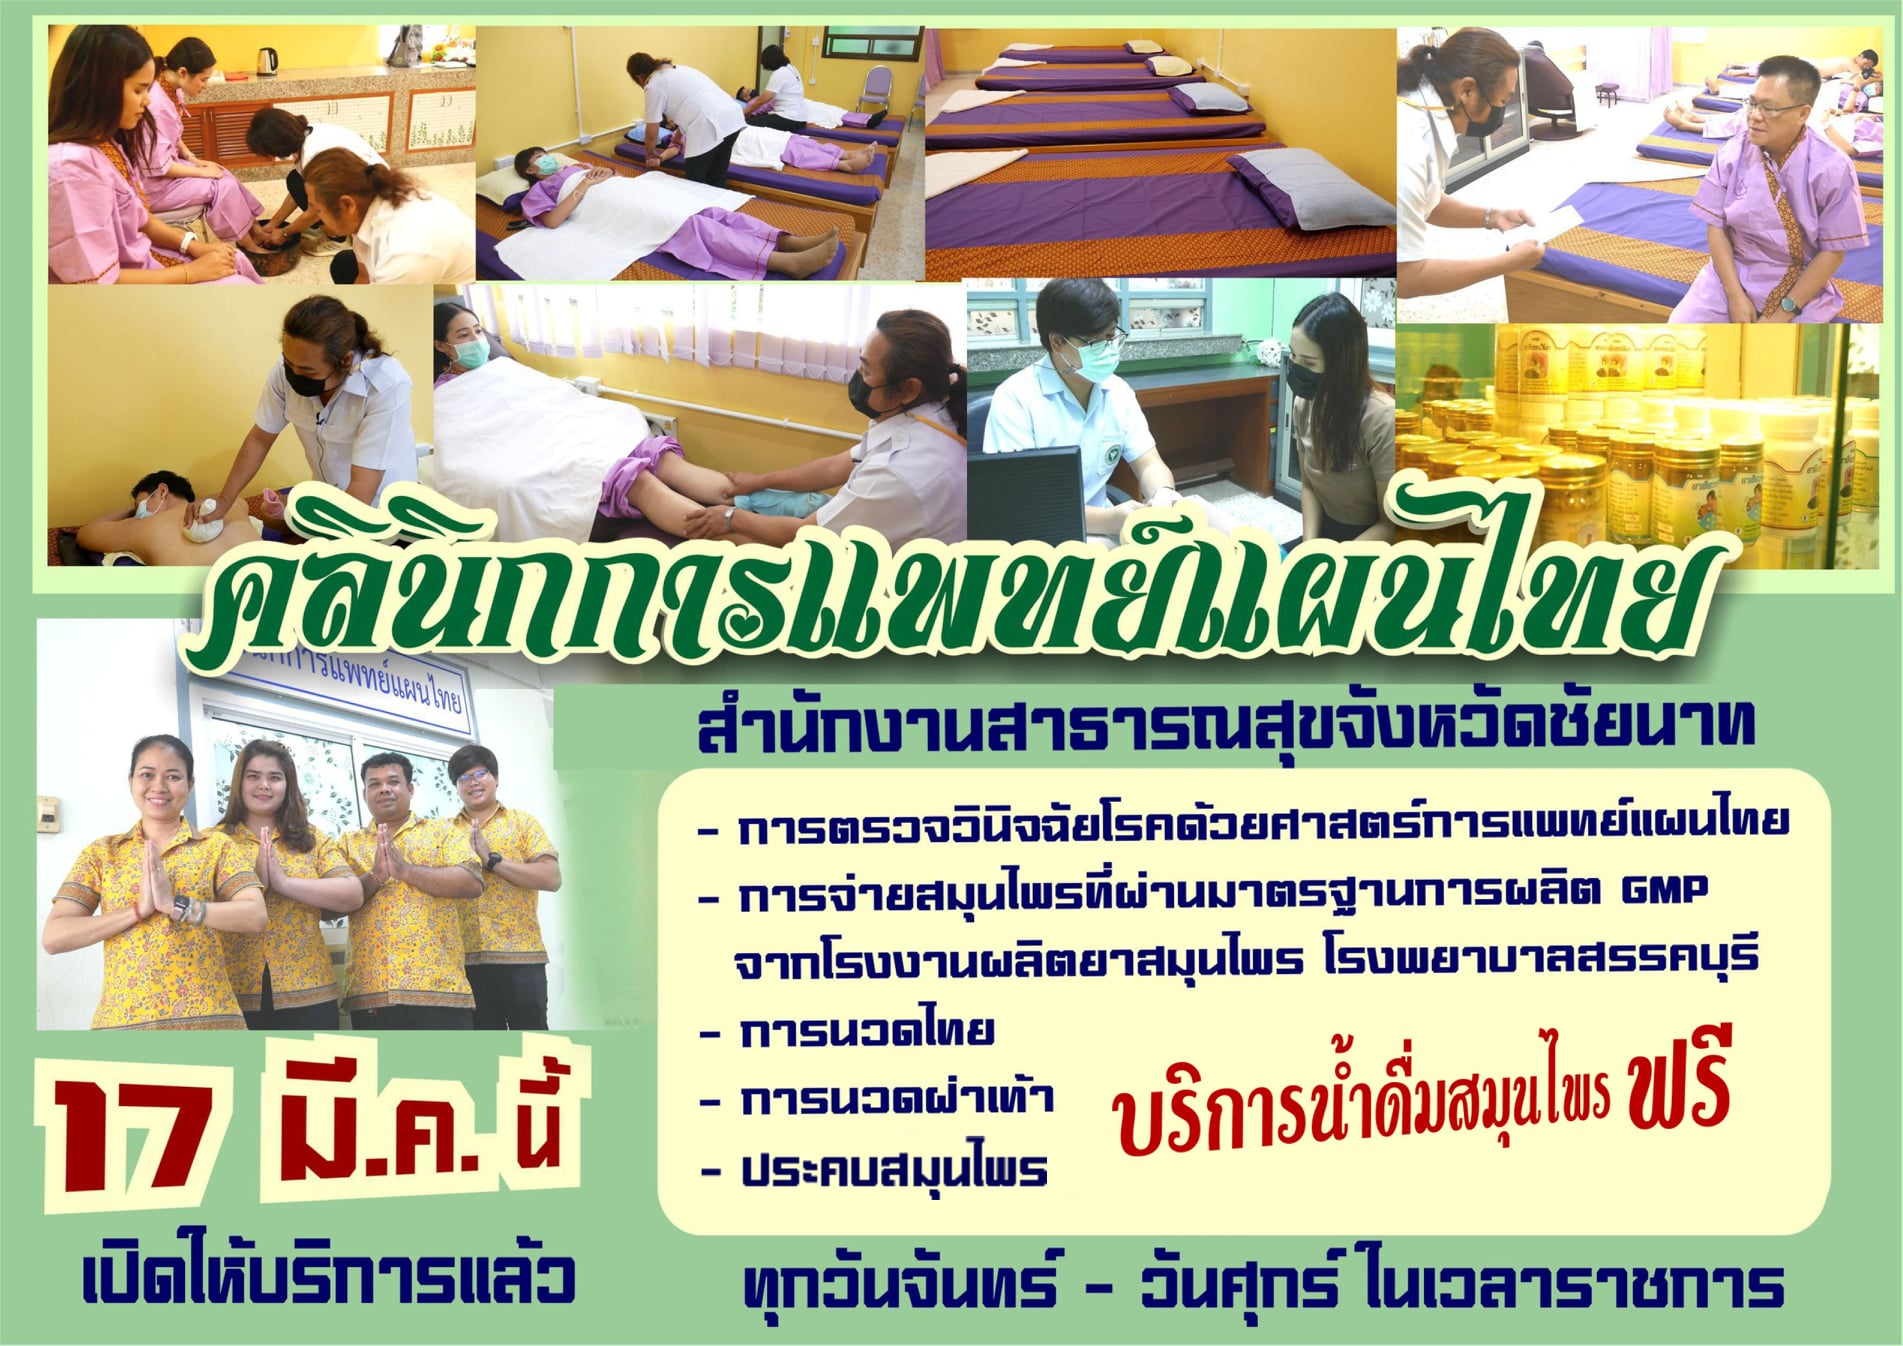 คลินิกการแพทย์แผนไทย สำนักงานสาธารณสุขจังหวัดชัยนาท เปิดให้บริการ 17 มี.ค.64